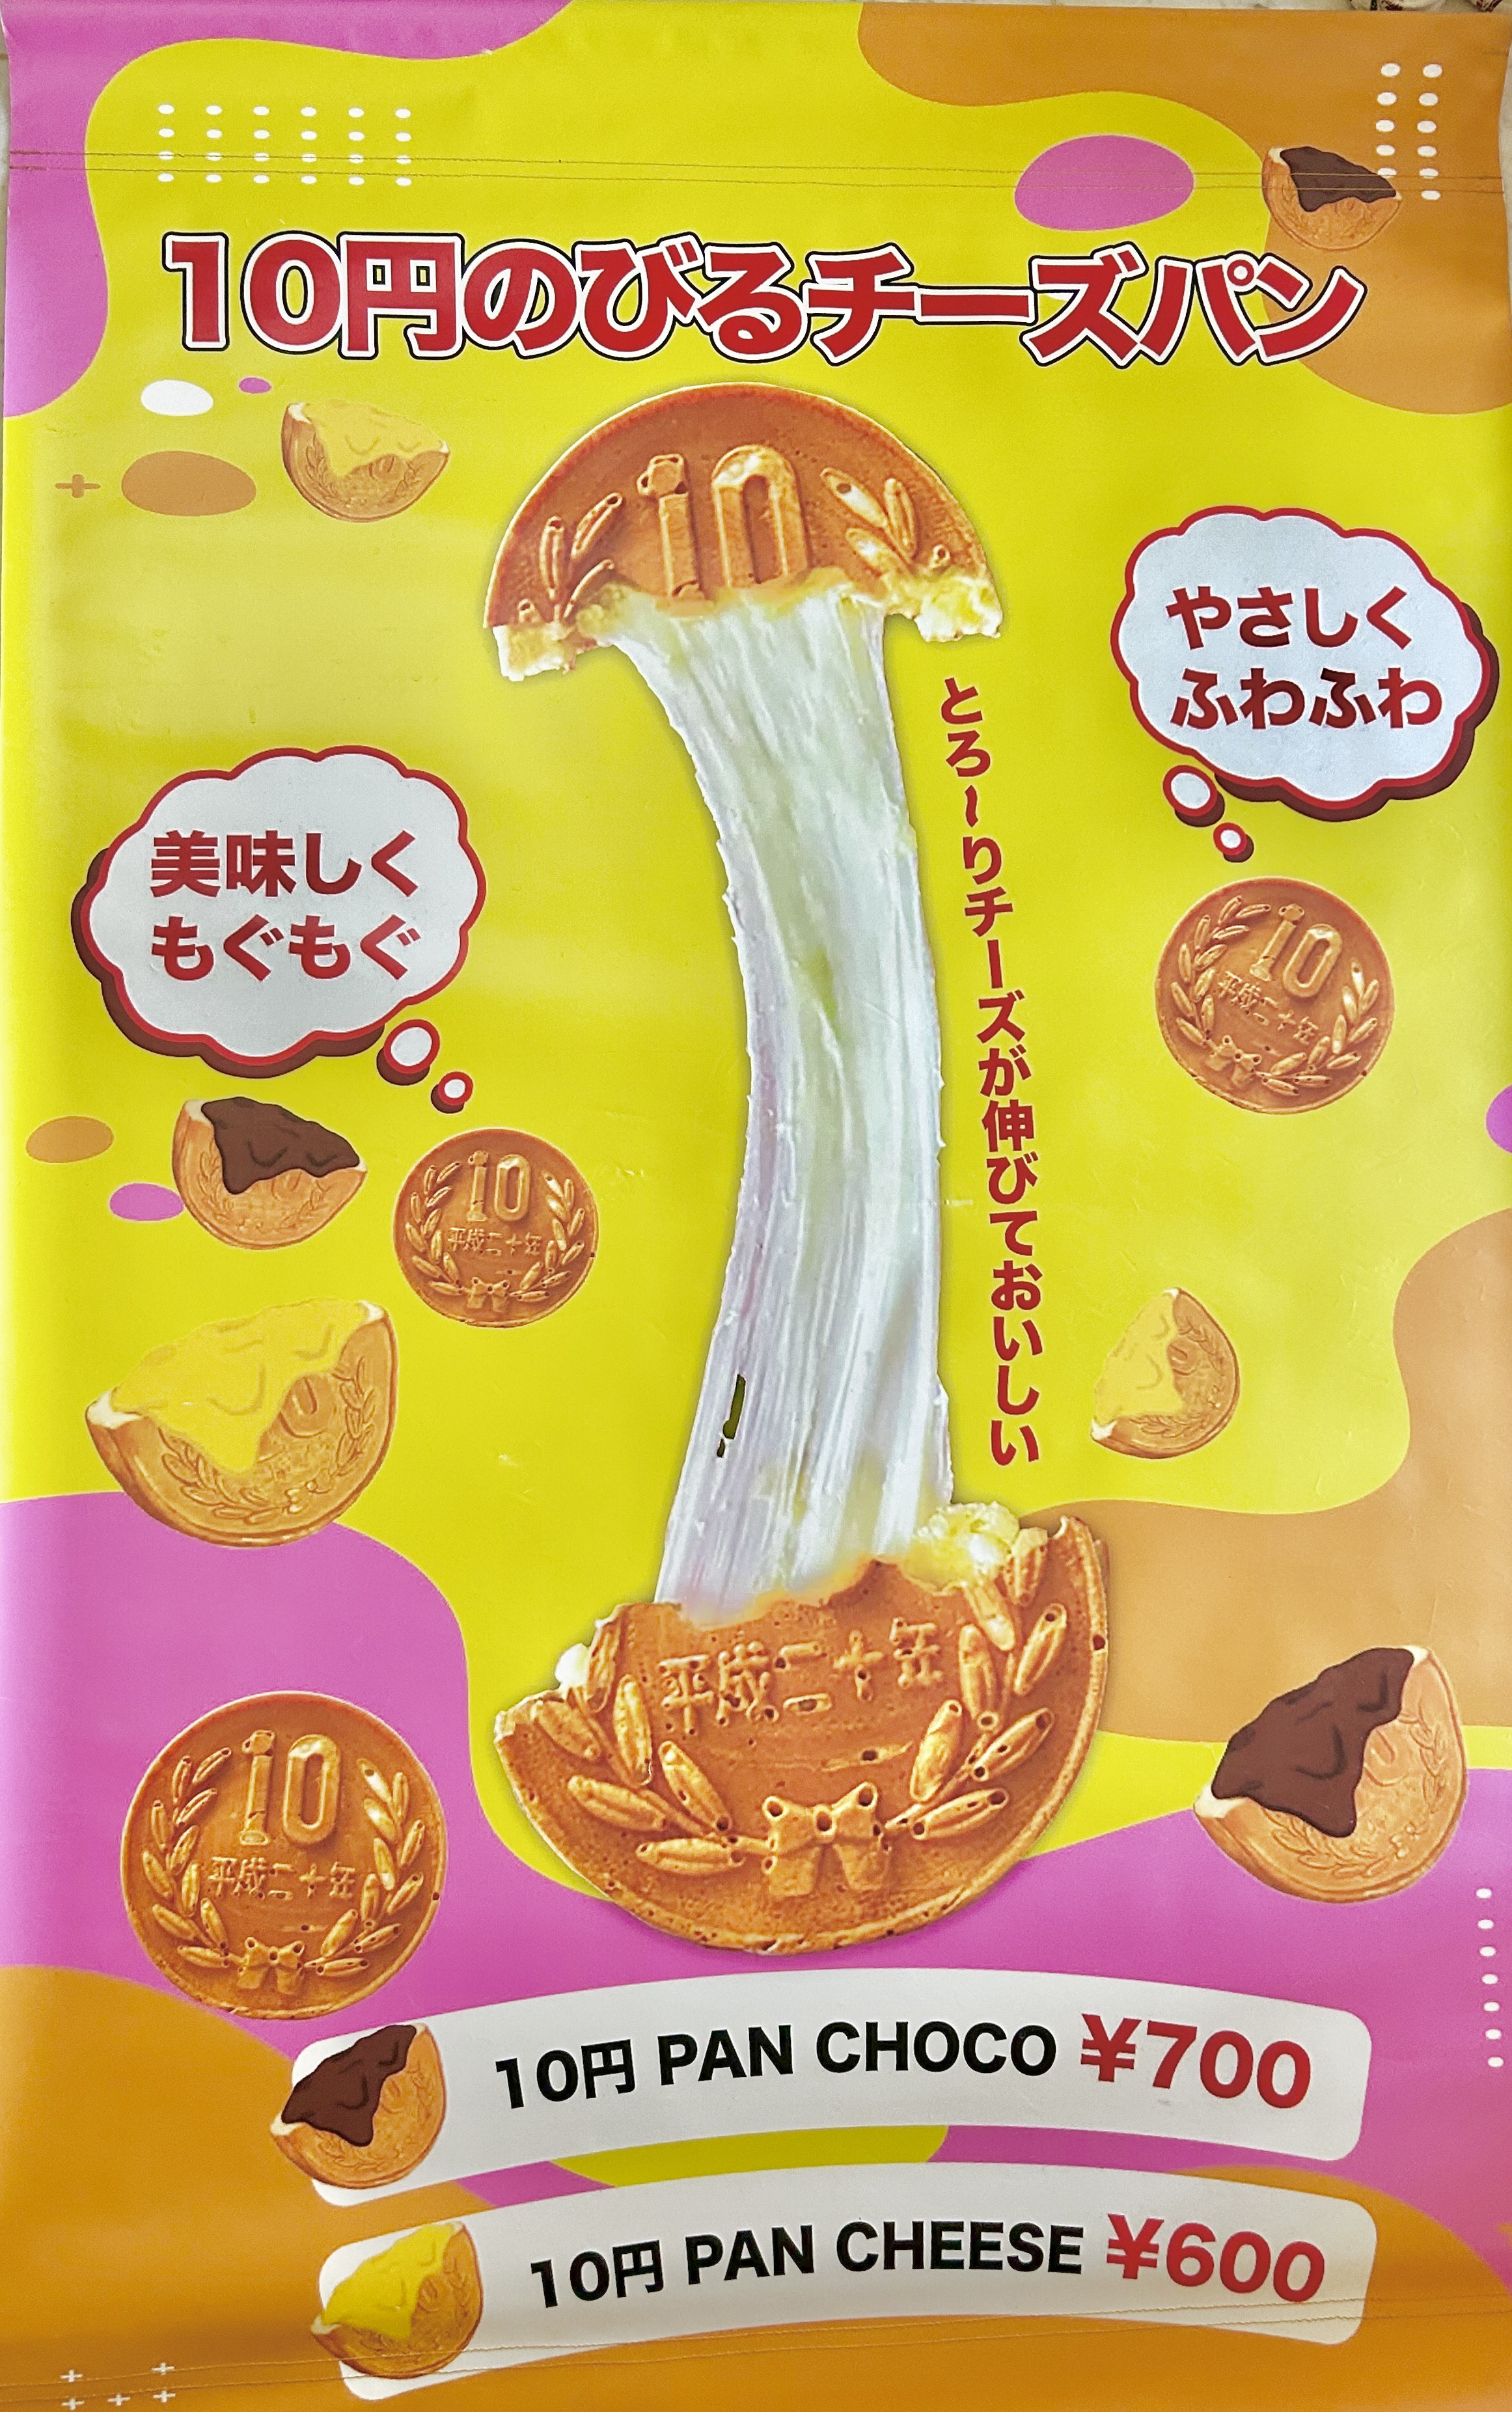 スイーツ部門の大人気商品10円パン